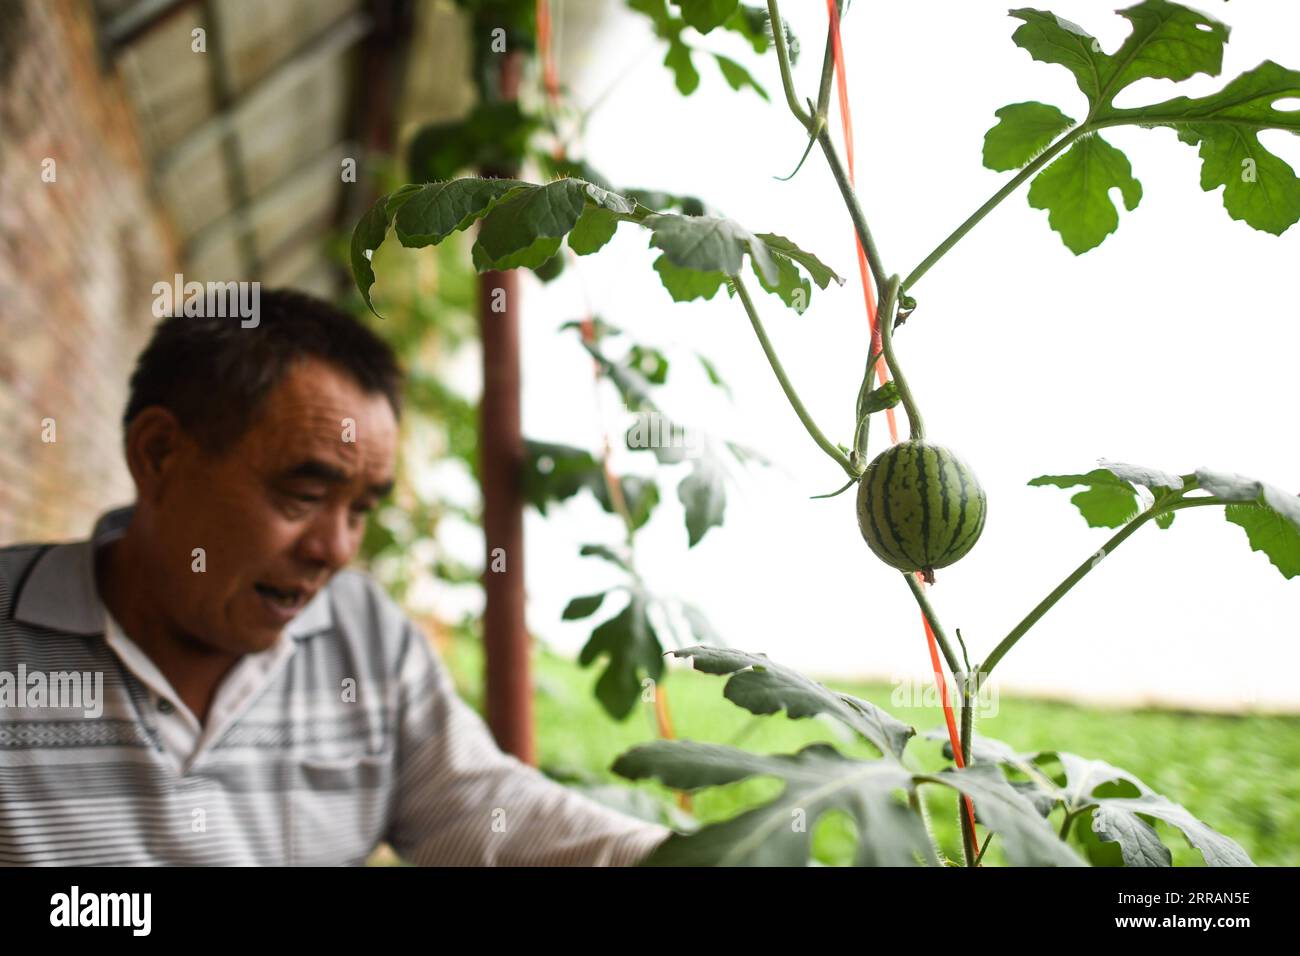 210809 -- YUSHU, 9 août 2021 -- Wei Jinming vérifie la croissance des pastèques dans sa plantation de légumes du village de Xinzhai, canton de Jiegu, préfecture autonome tibétaine de Yushu dans le nord-ouest de la Chine, province de Qinghai, 5 août 2021. Brocoli, poireaux, riz... Tous poussent dans leur haute saison dans la plantation de légumes de Wei Jinming au village de Xinzhai, près de 4 000 mètres au-dessus du niveau de la mer. Wei, originaire de la province du Henan en Chine centrale, a déménagé à Jiegu et a commencé sa plantation avec un morceau de terres agricoles sous contrat. Une pelle après l'autre, il y déplaçait des rochers et des sables, et les remplaçait par la nuit Banque D'Images